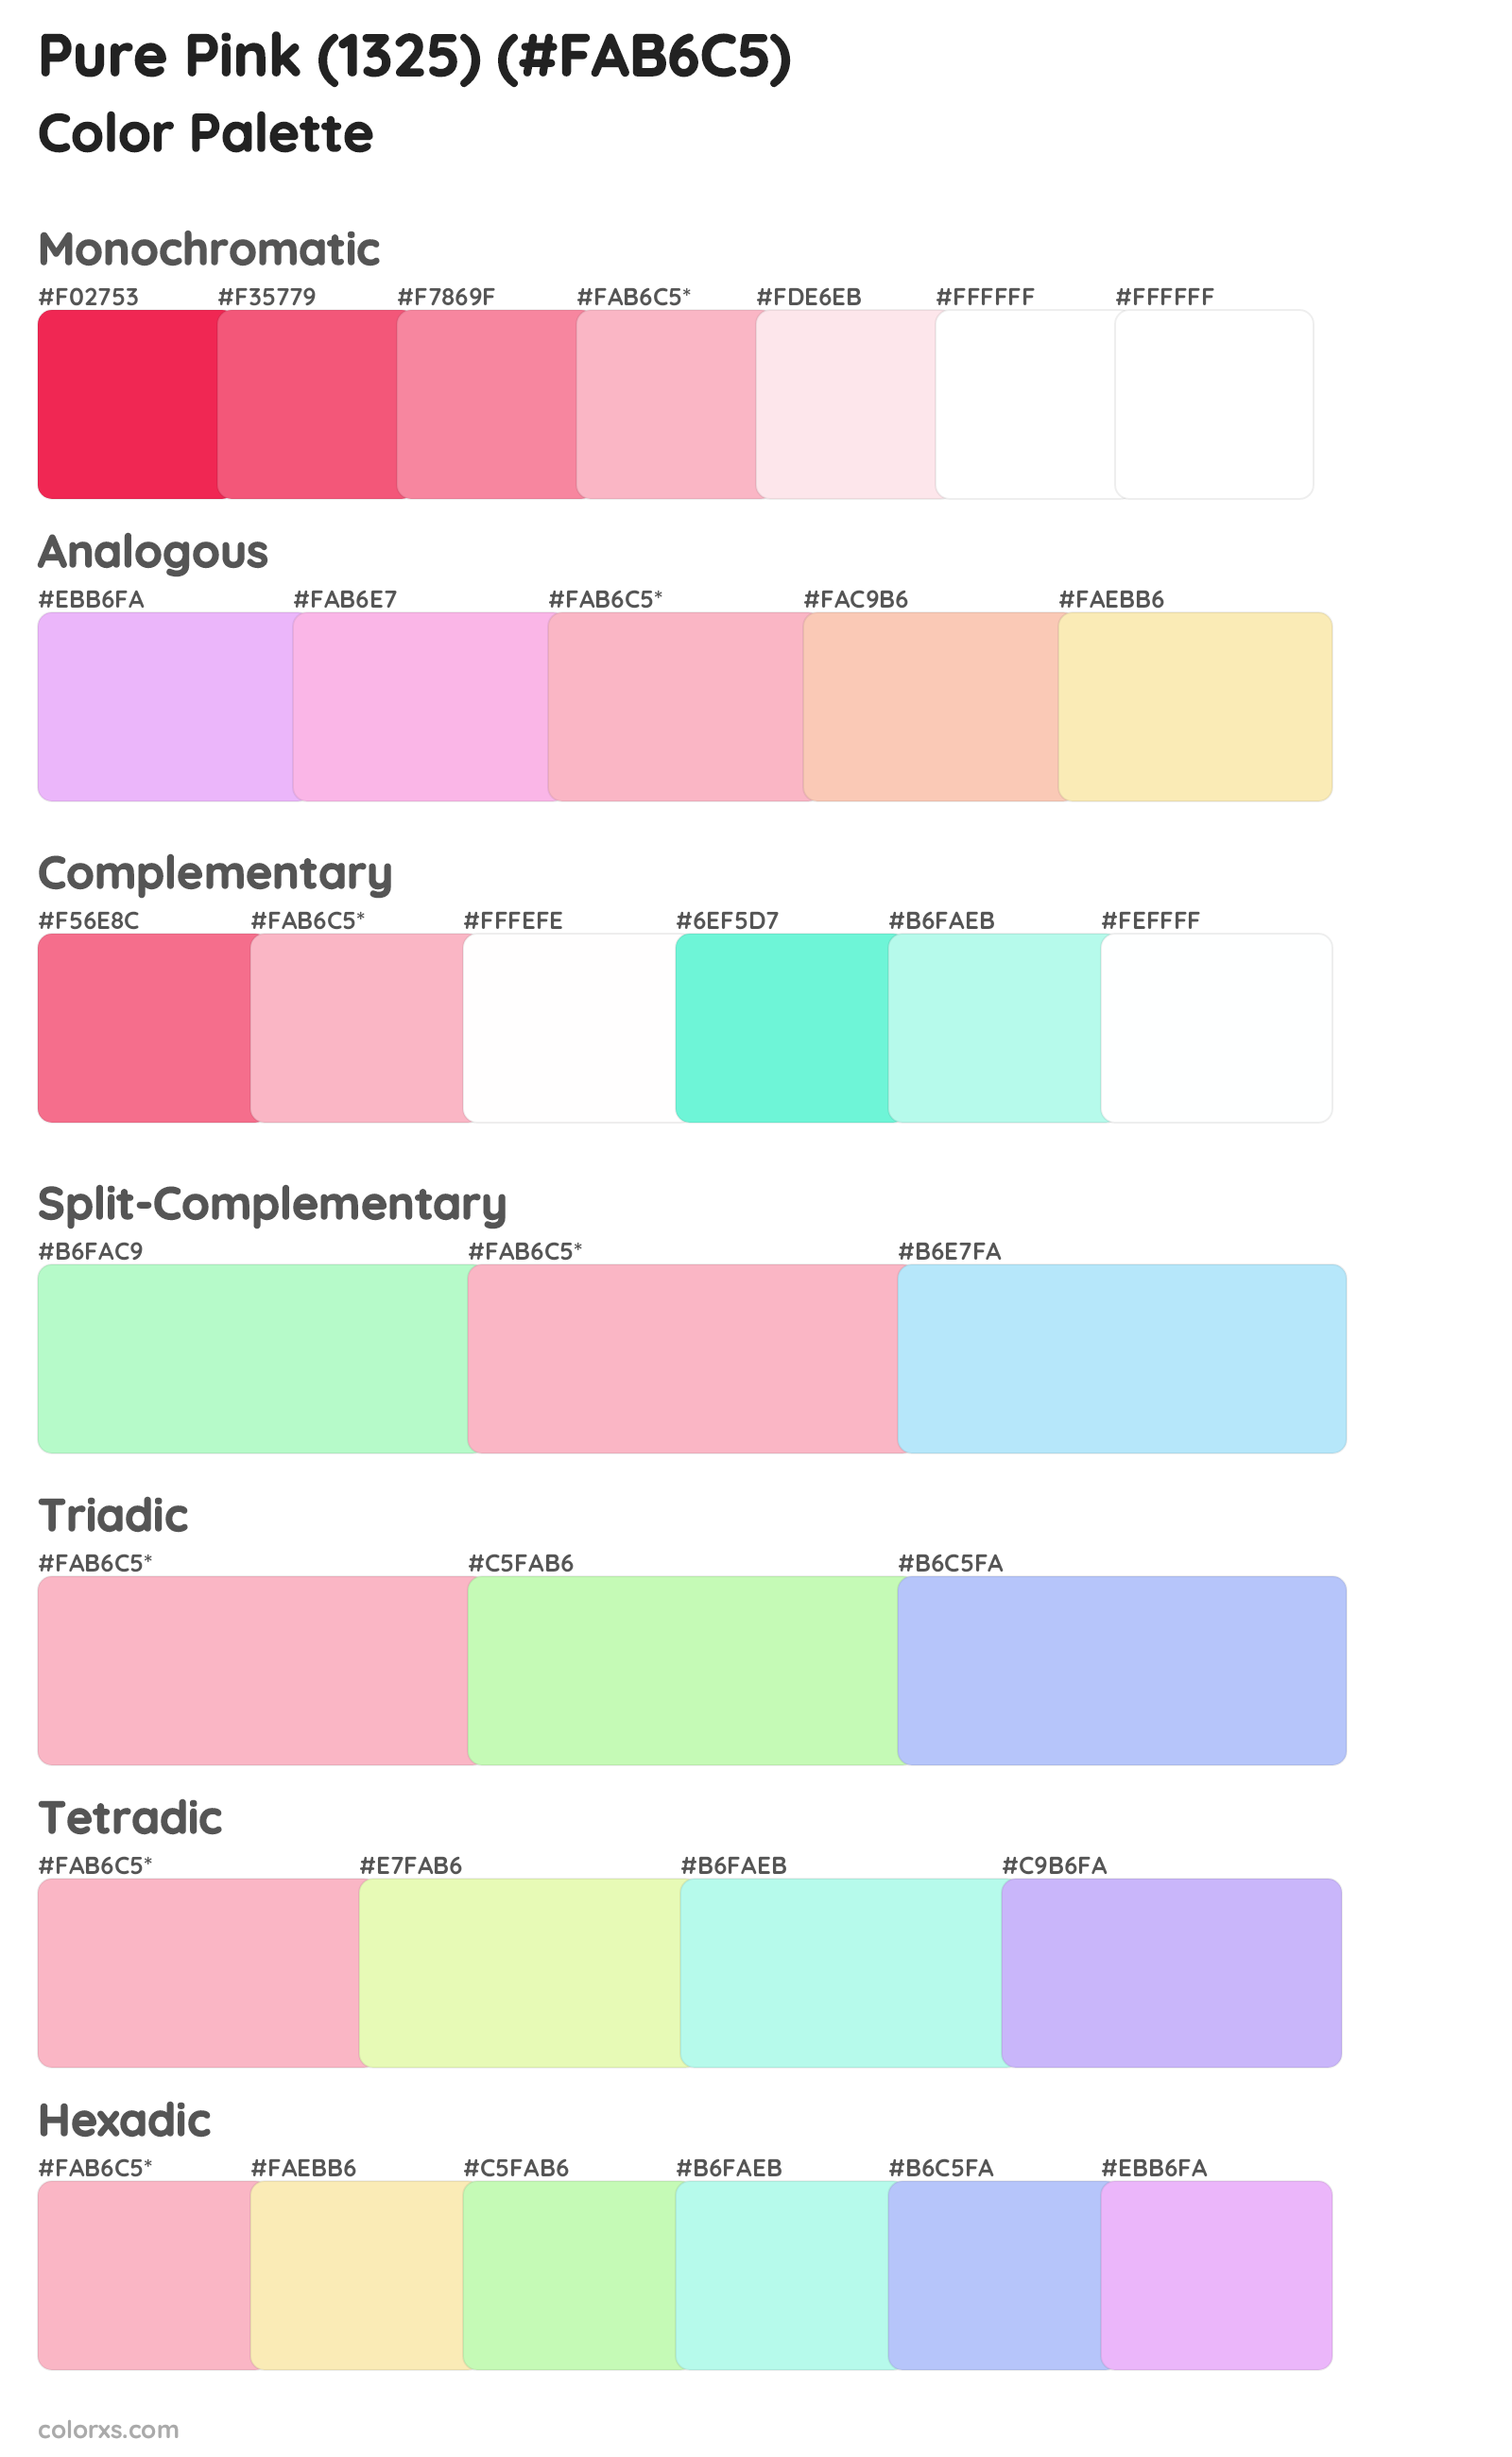 Pure Pink (1325) Color Scheme Palettes